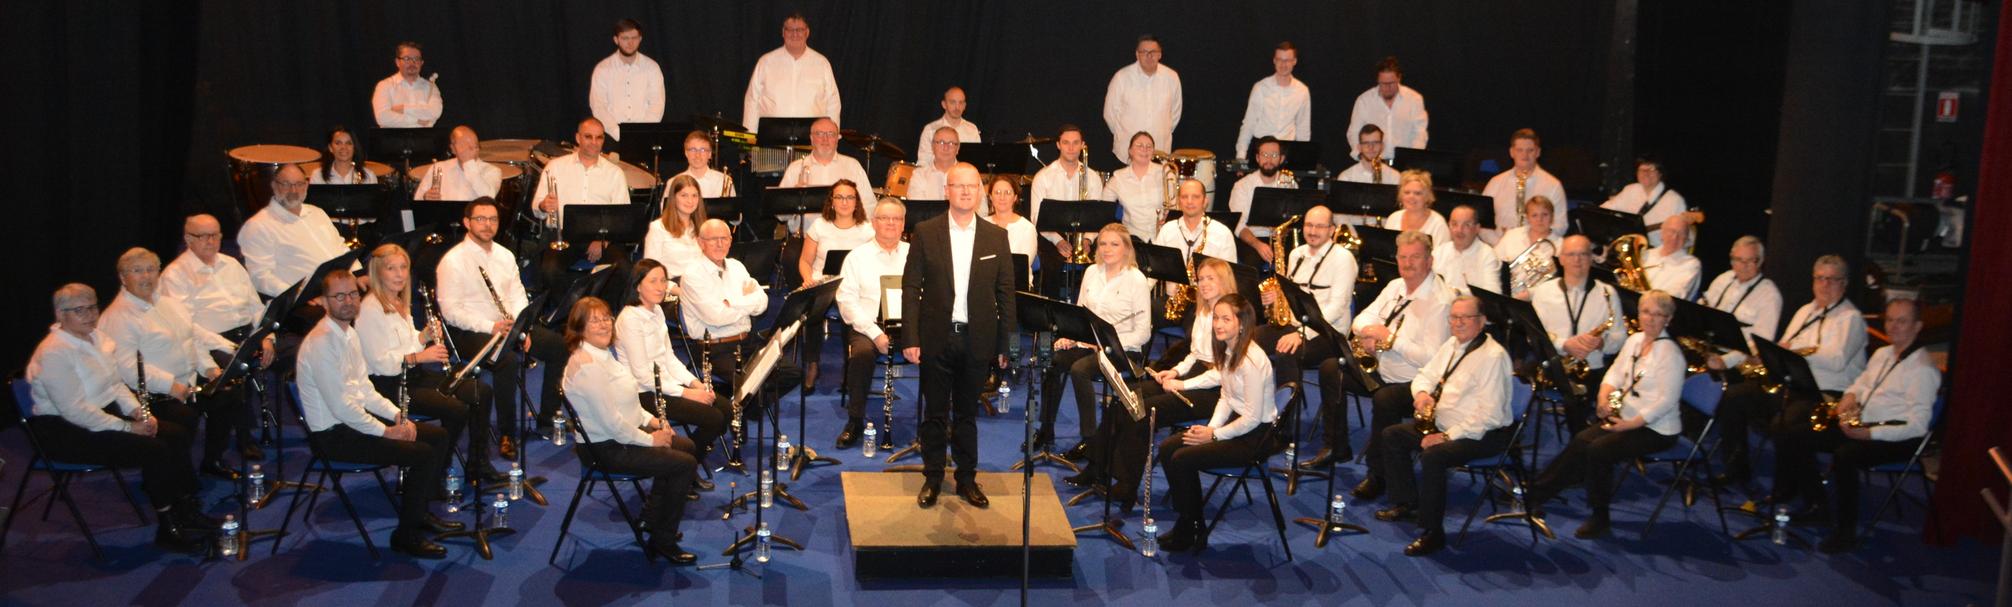 Orchestre d'Harmonie Dunkerque-Rosendaël